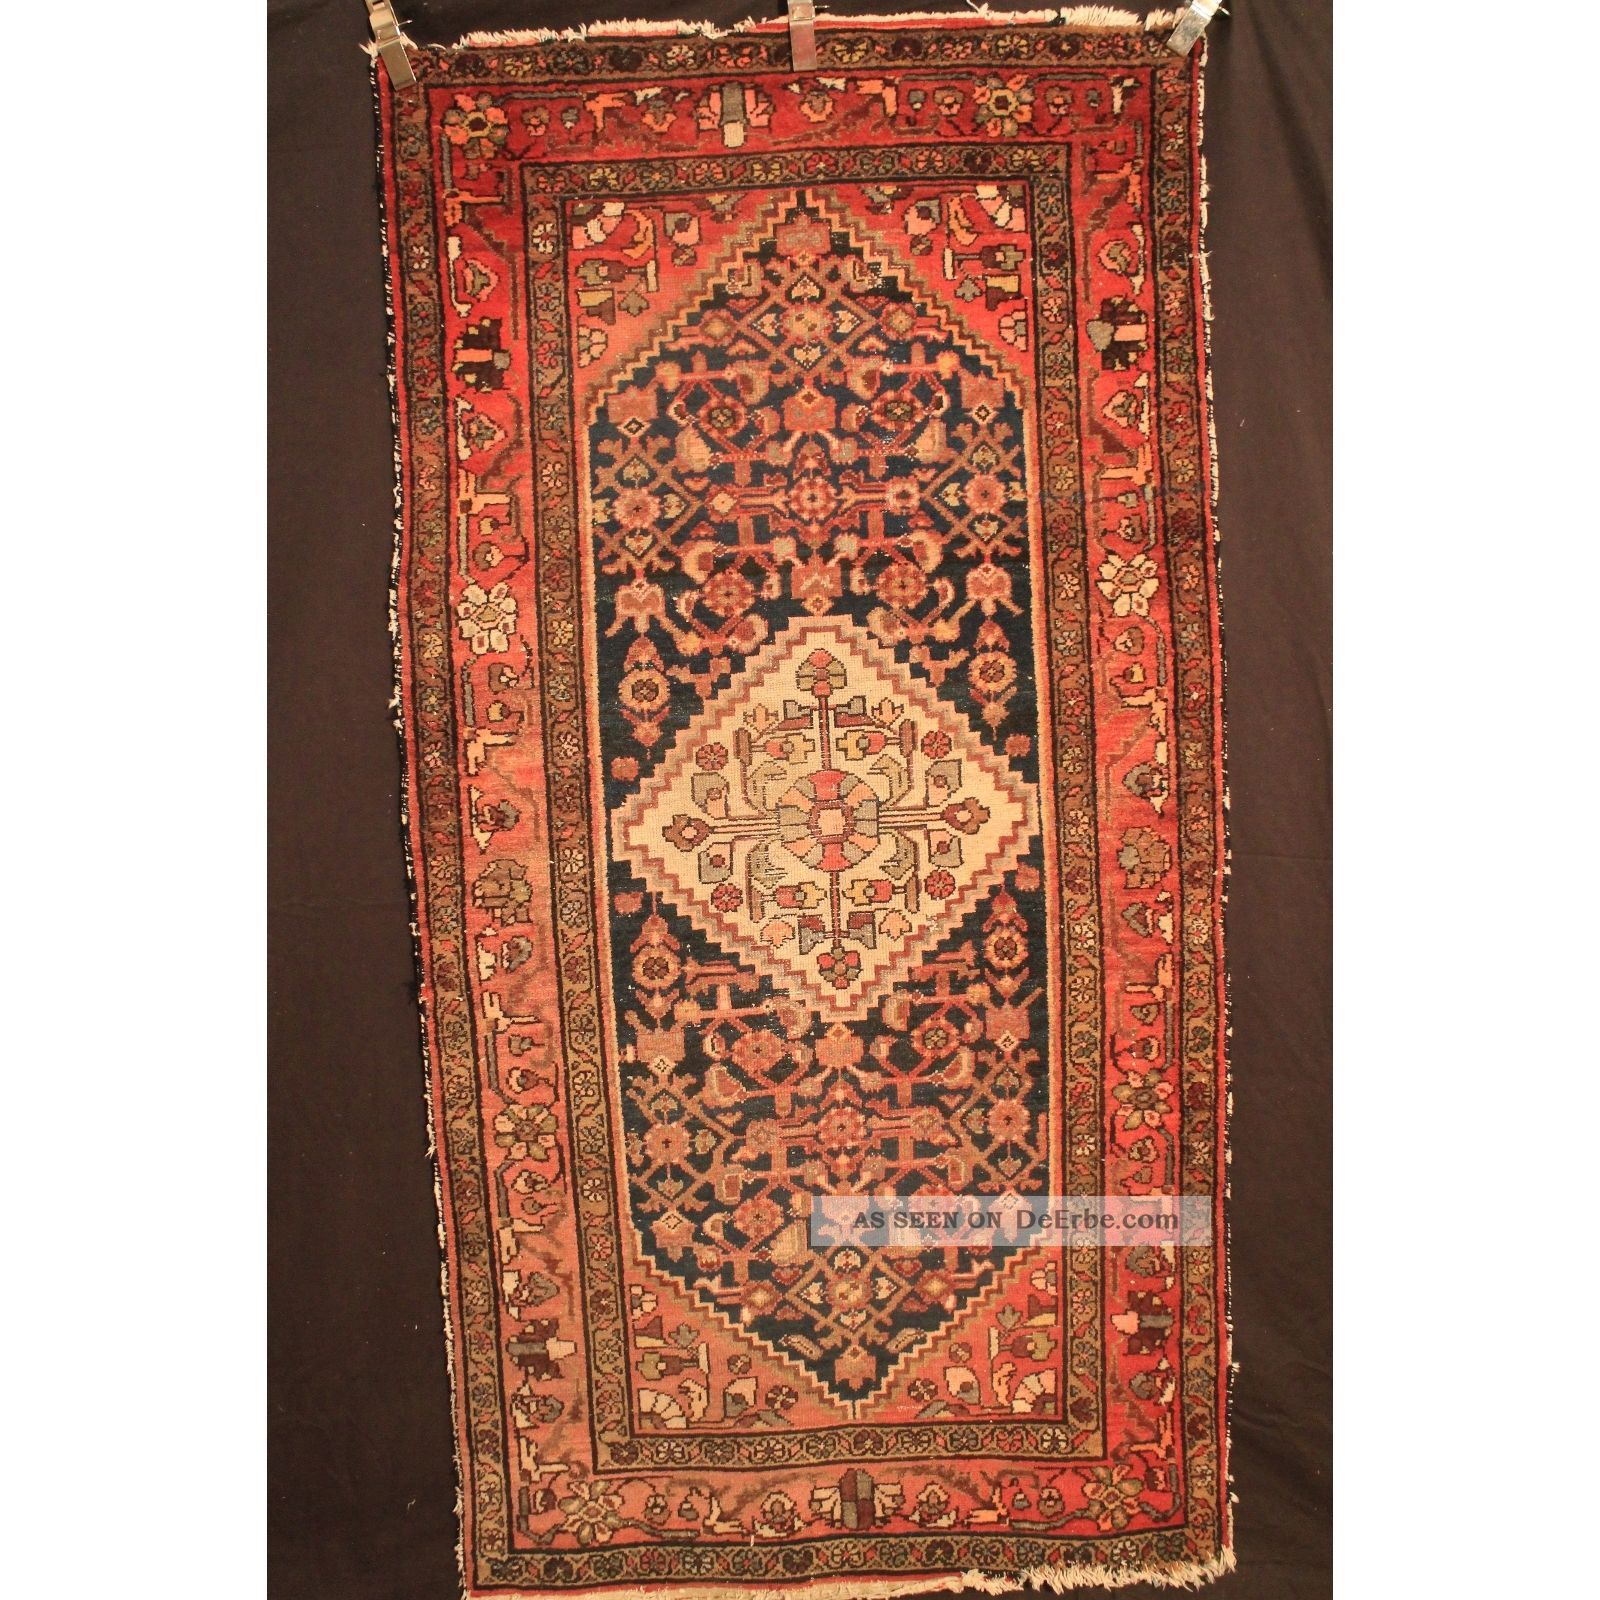 Alt Handgeknüpft Orient Teppich Malaya Kurde Old Rug Carpet Tappeto 208x107cm Teppiche & Flachgewebe Bild